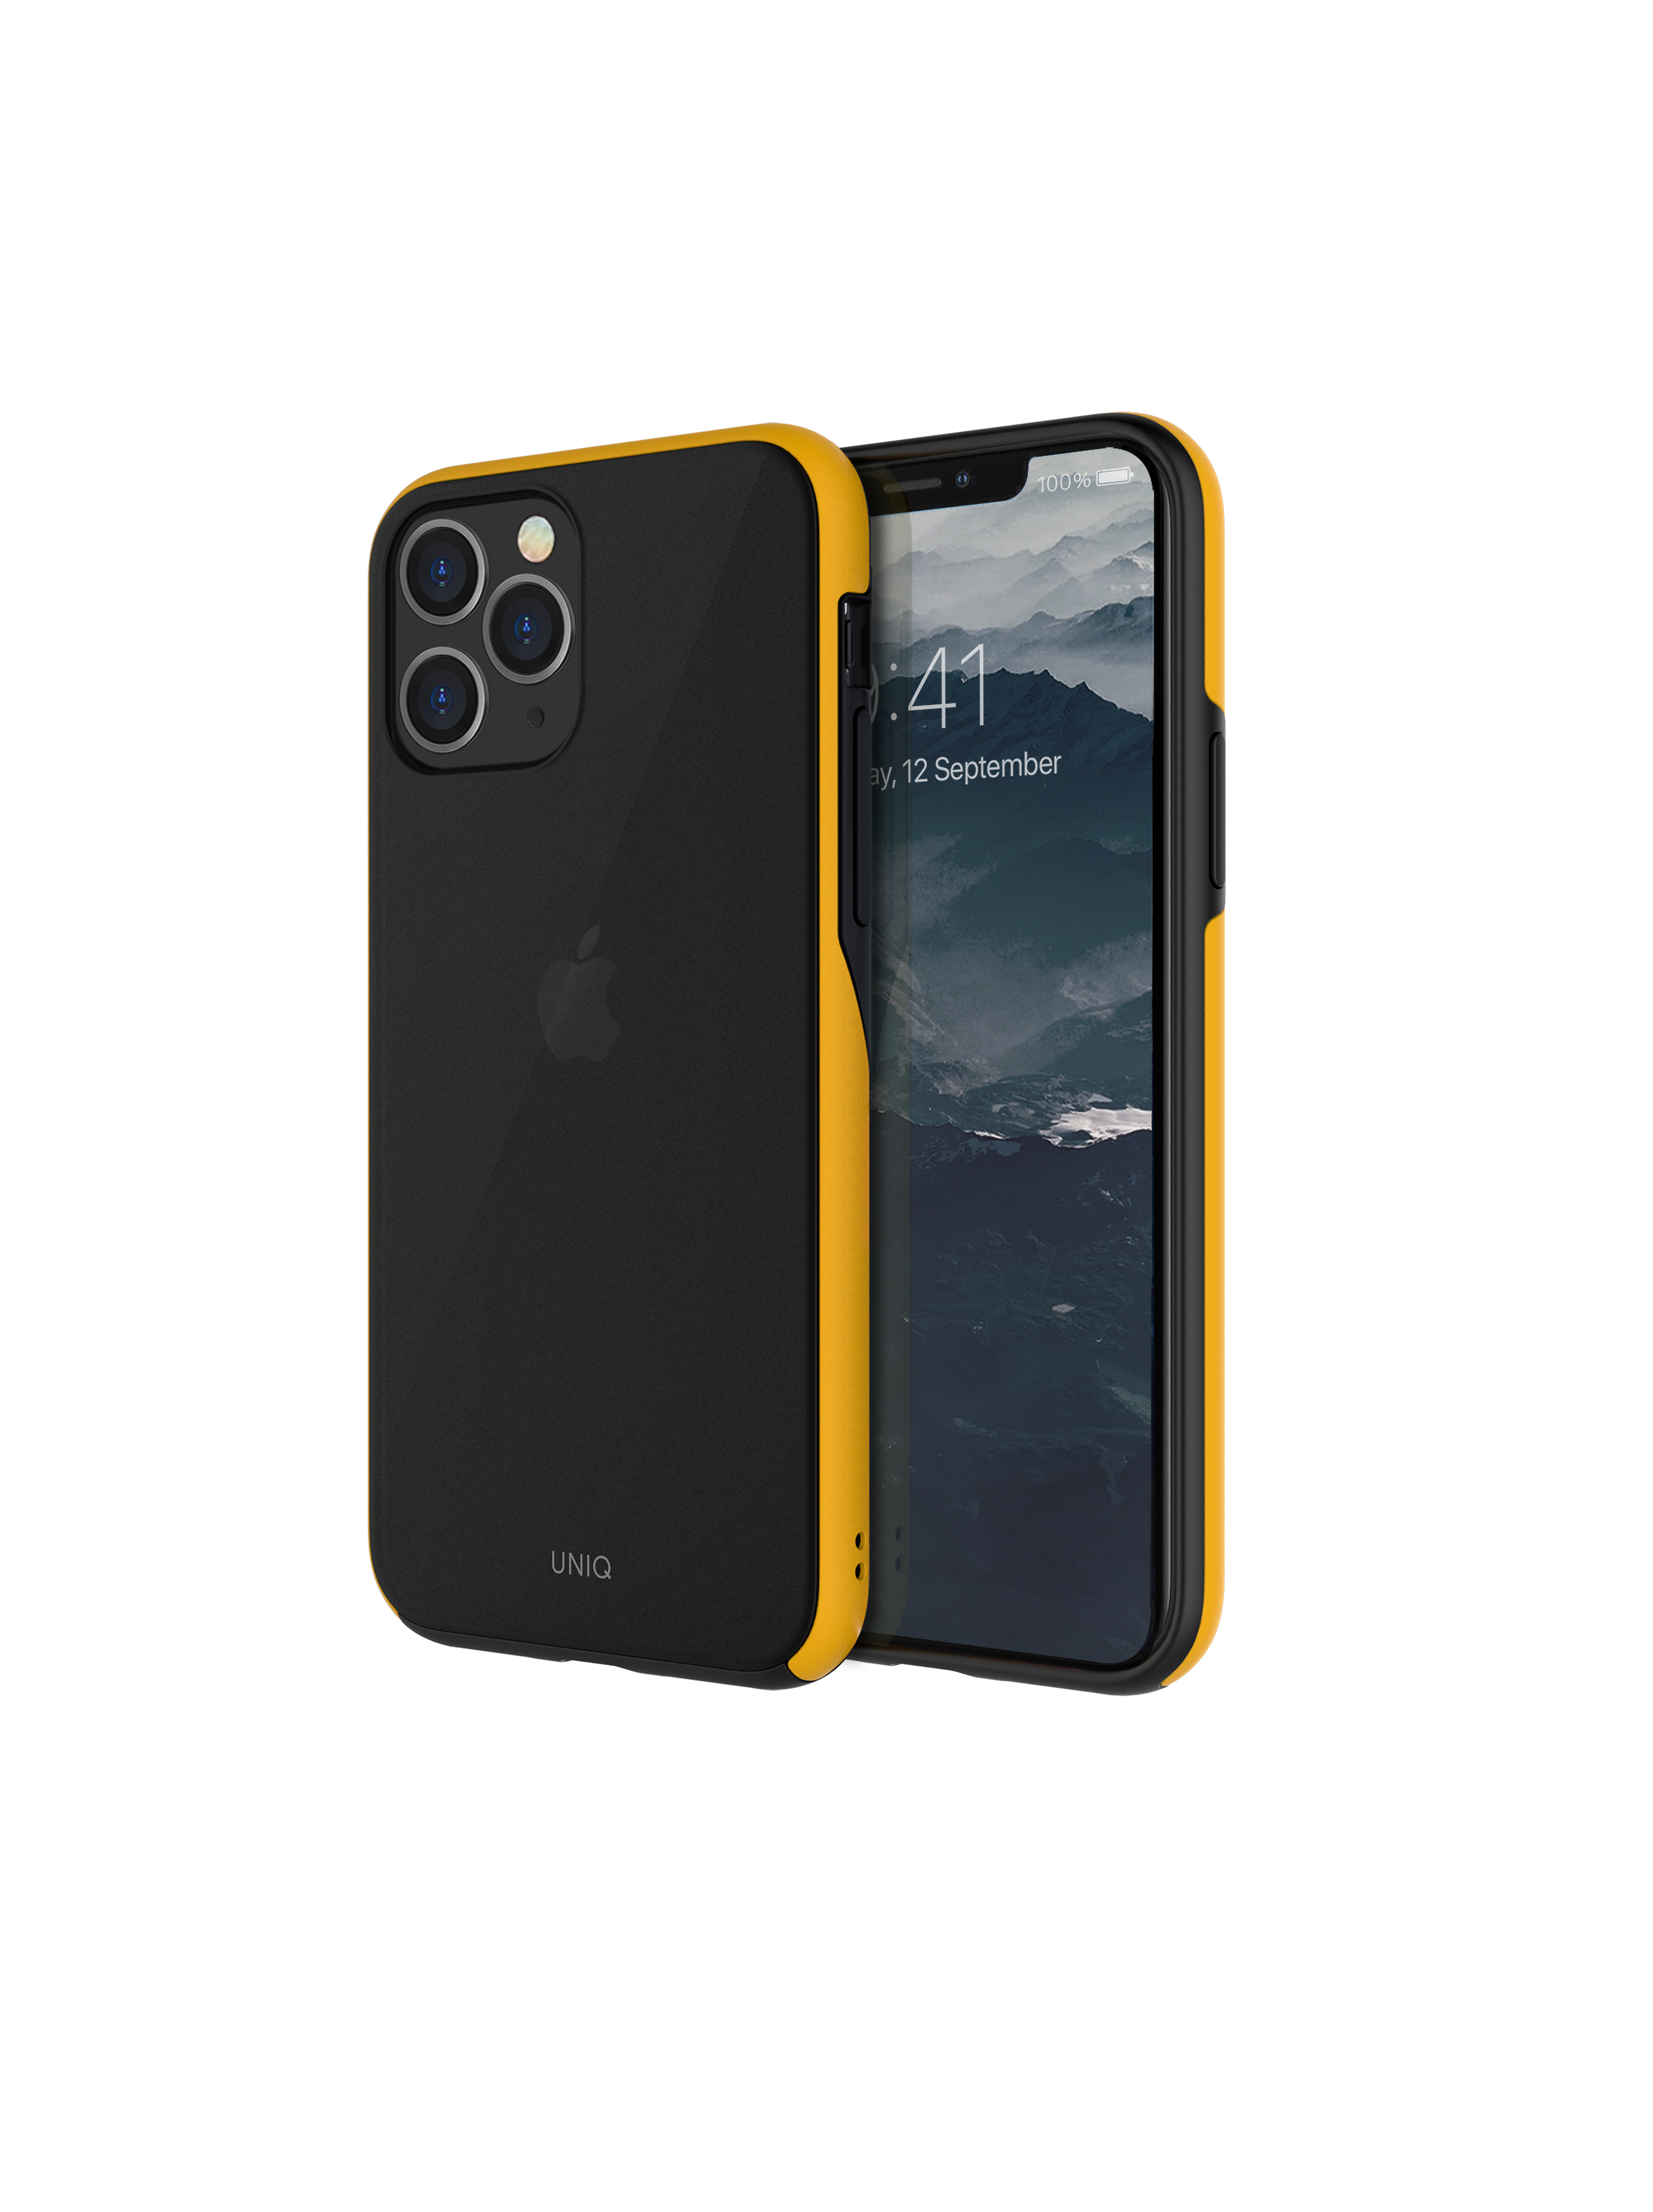 iPhone 11 Pro, case vesto hue, black/yellow